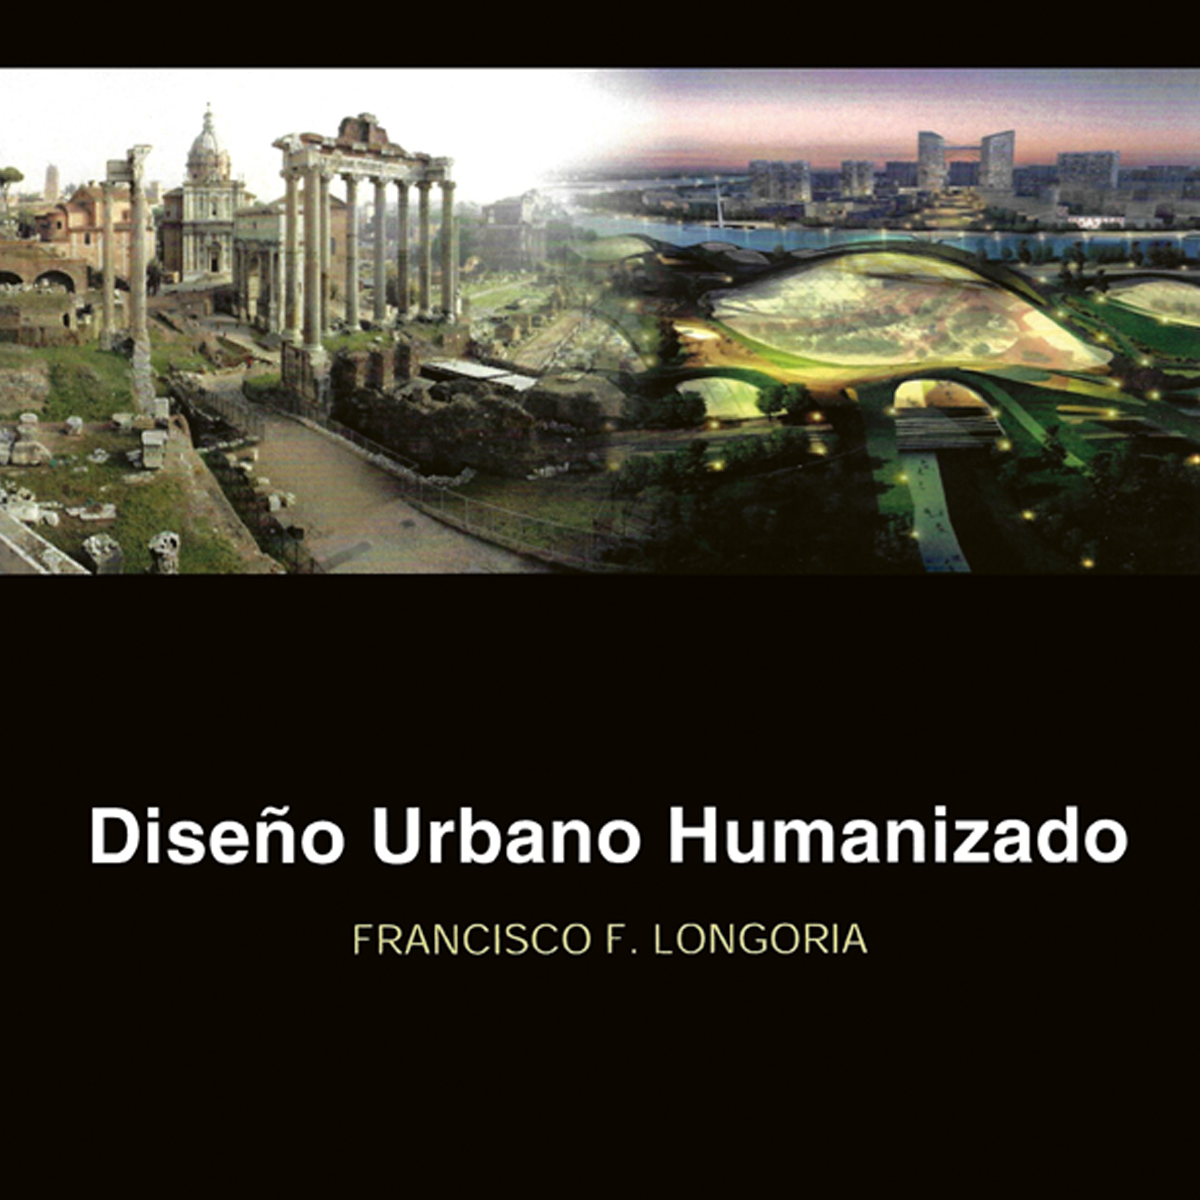 Diseño urbano humanizado